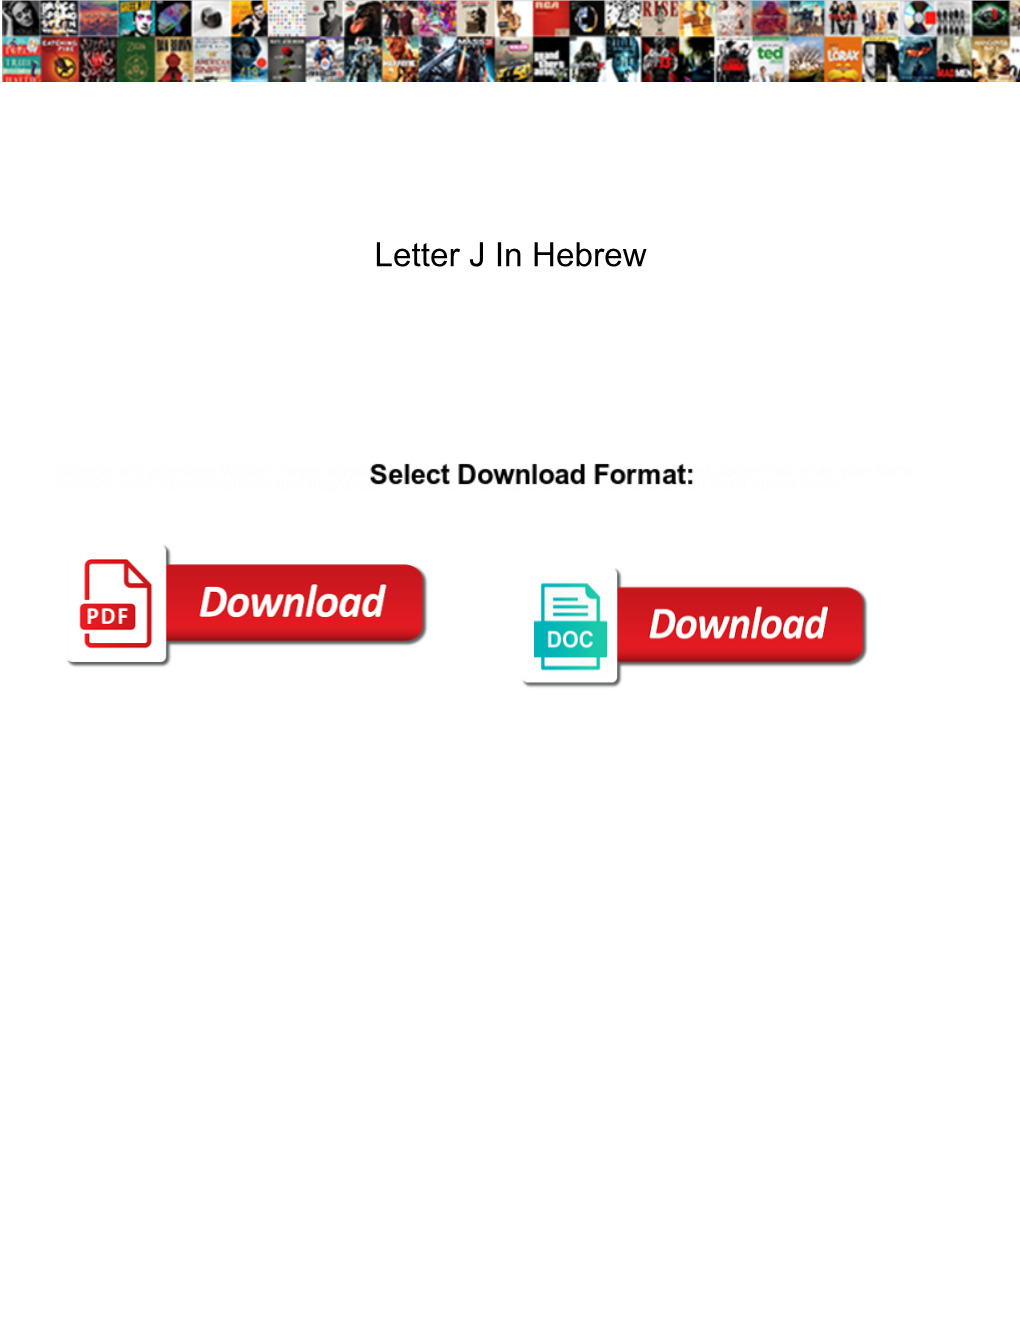 Letter J in Hebrew